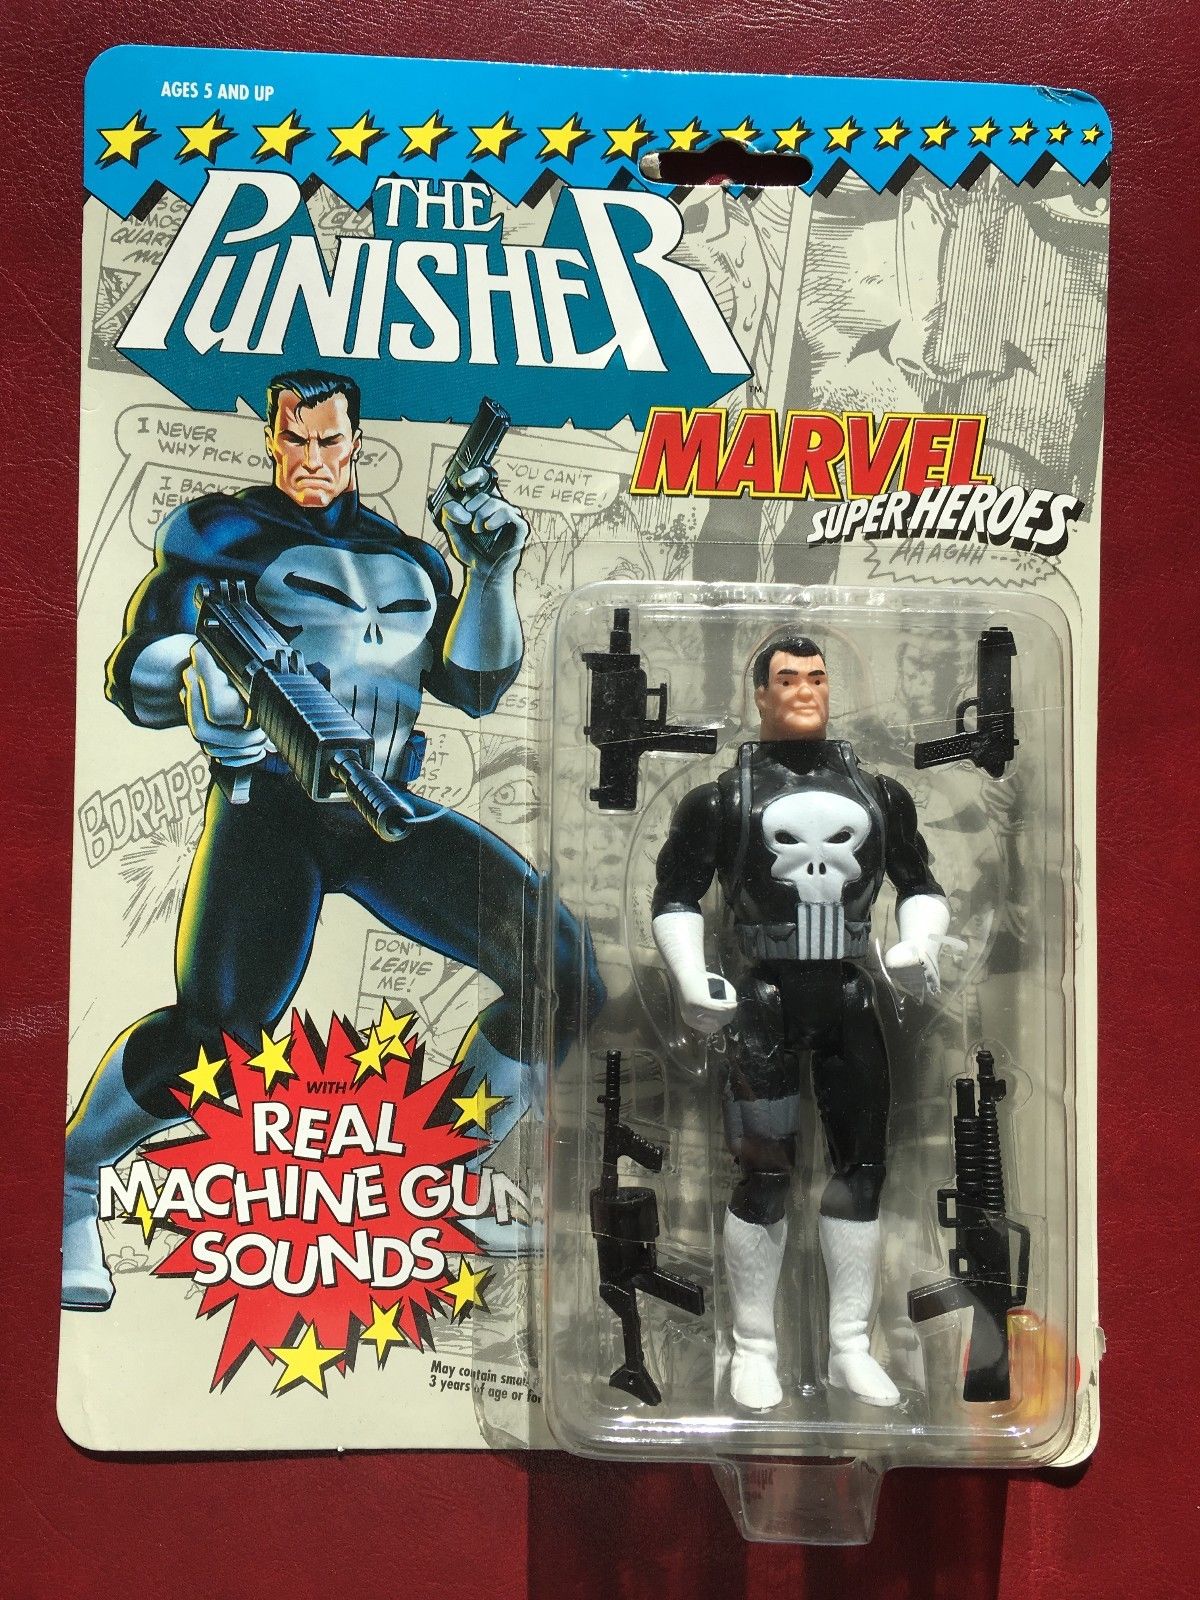 The Punisher machine gun figure from Toy Biz.